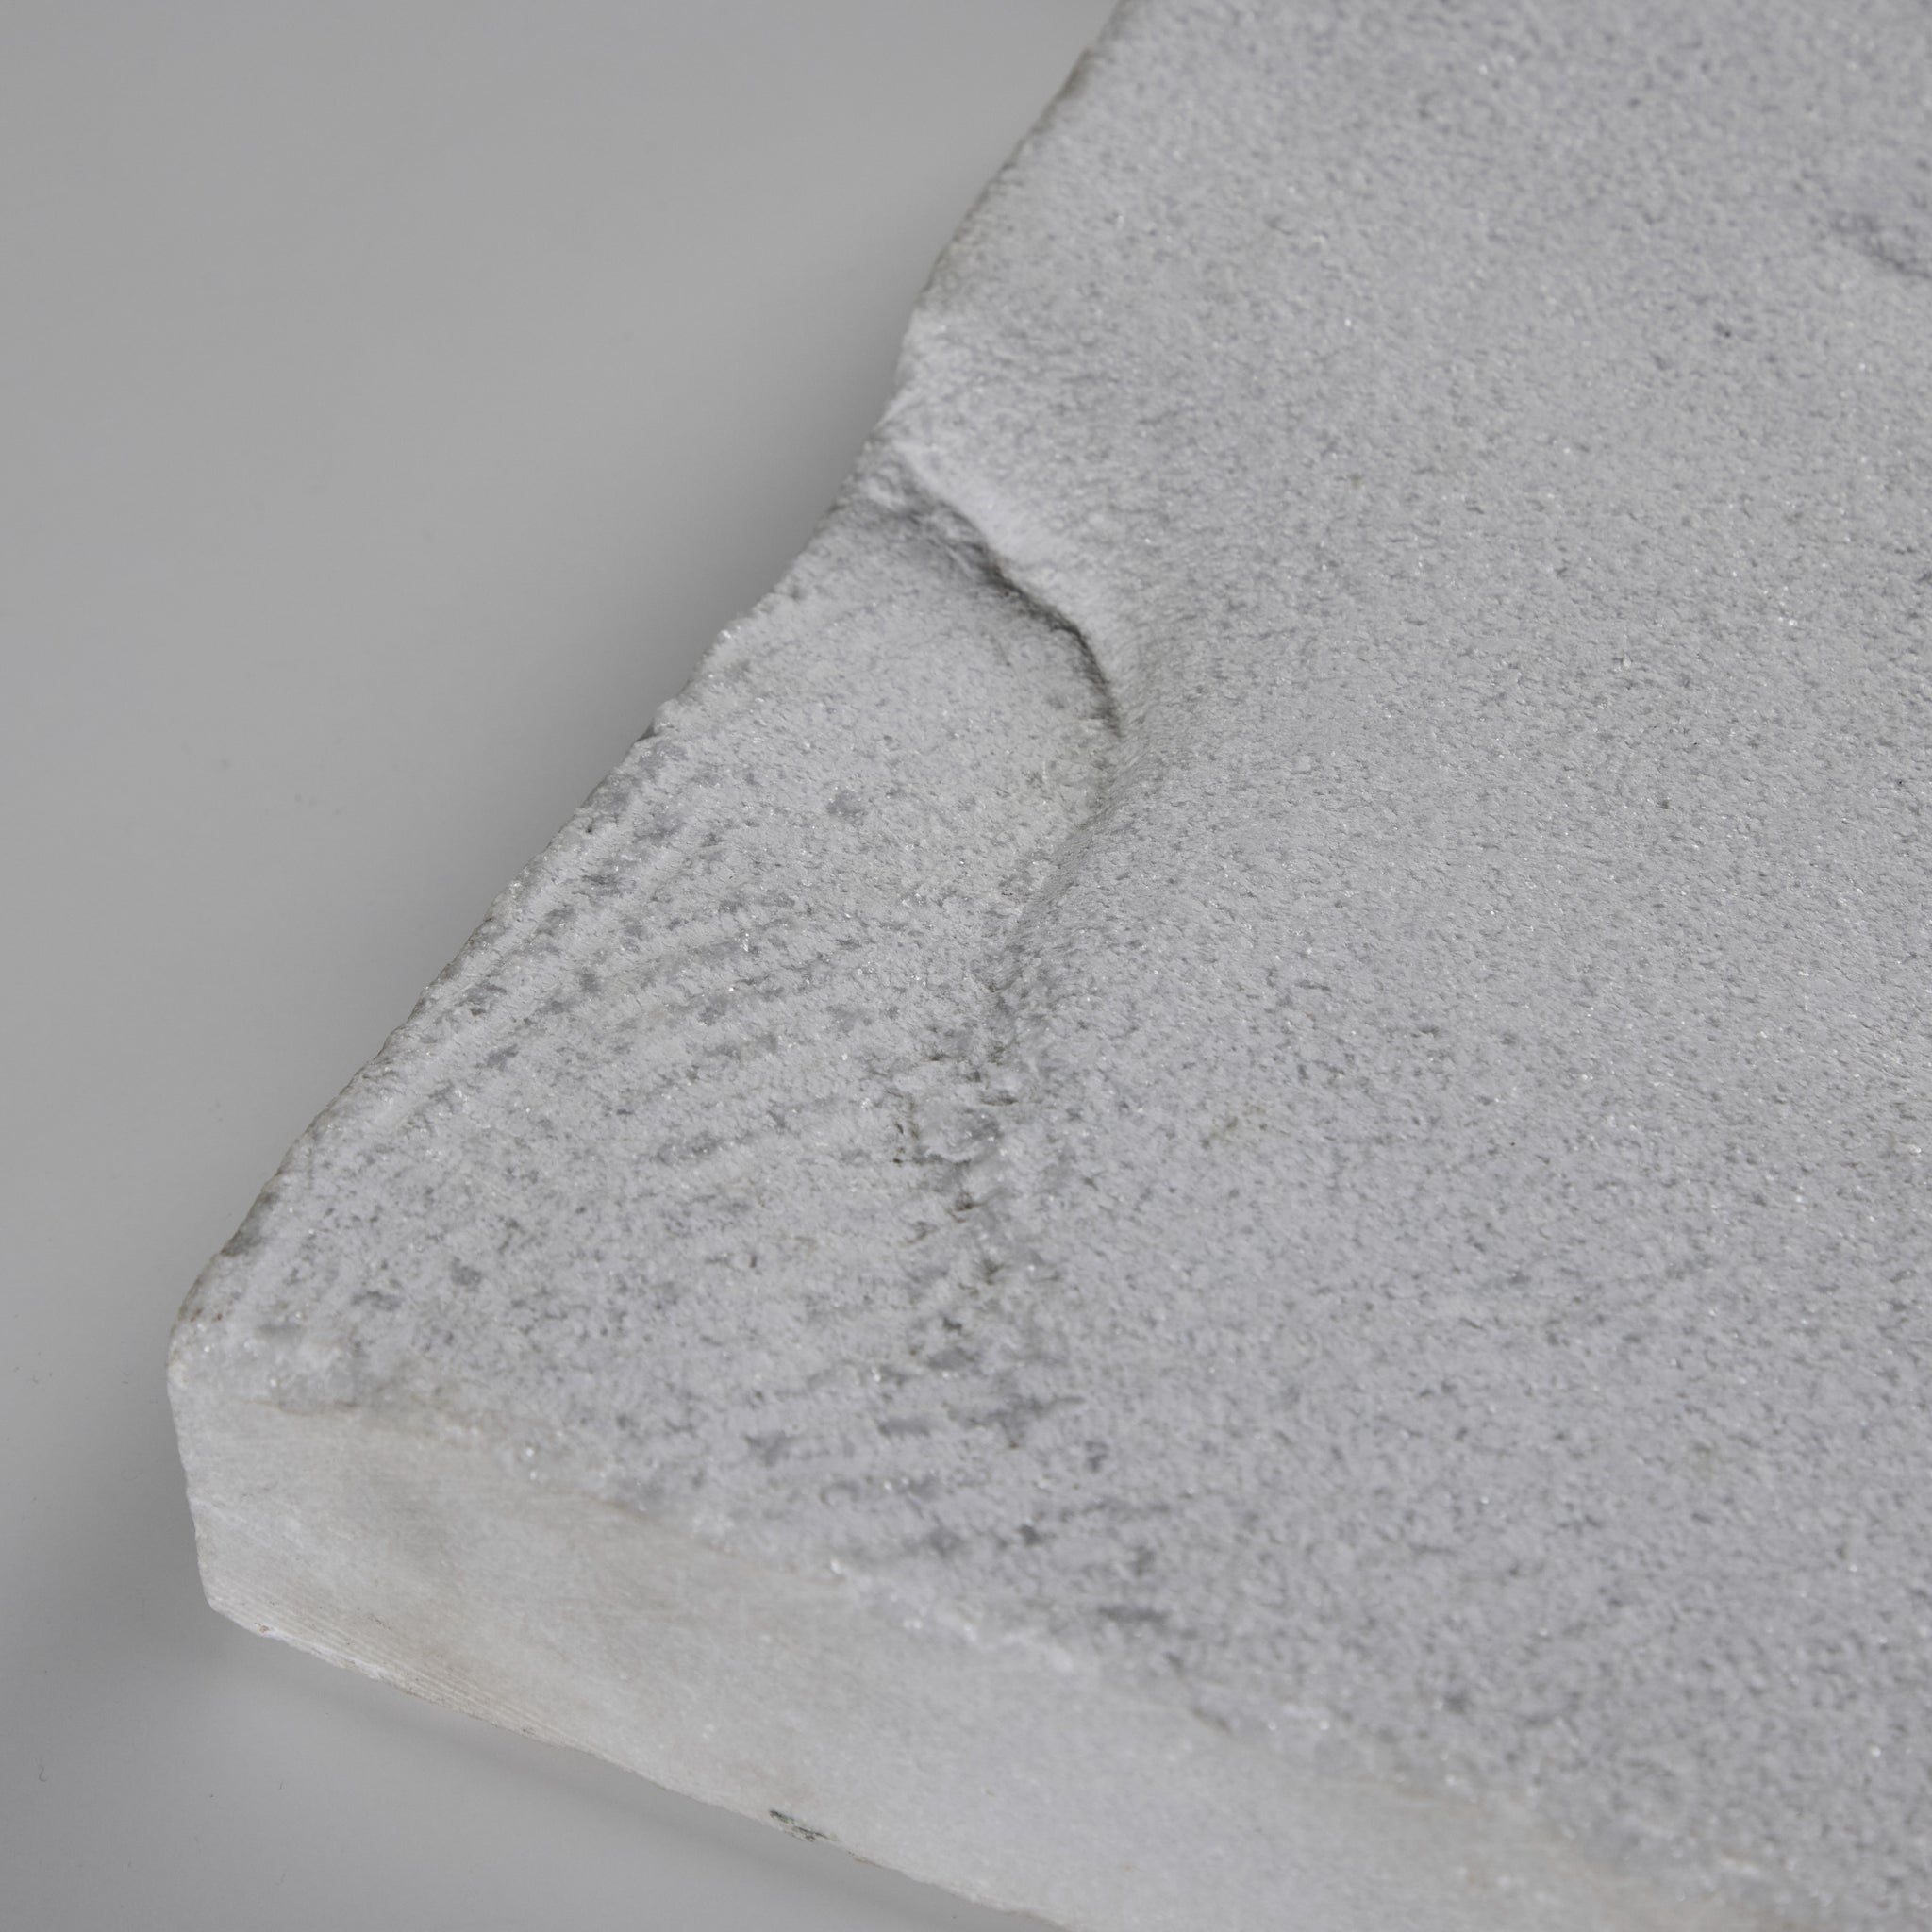 Textural White Stone Slab